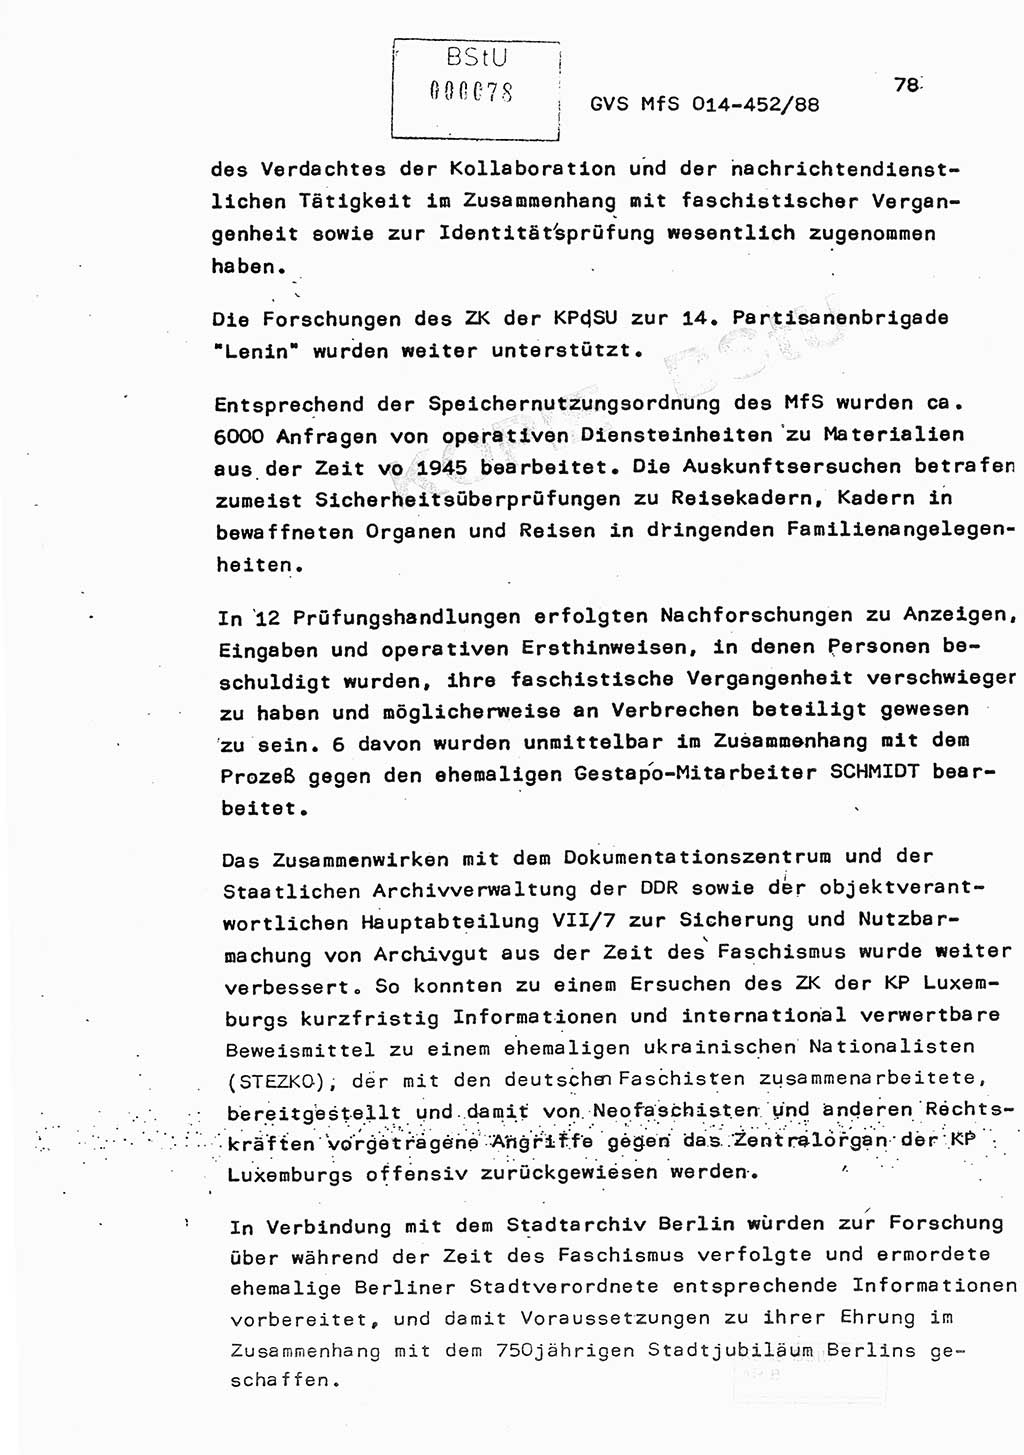 Jahresbericht der Hauptabteilung (HA) Ⅸ 1987, Einschätzung der Wirksamkeit der Untersuchungsarbeit im Jahre 1987, Ministerium für Staatssicherheit (MfS) der Deutschen Demokratischen Republik (DDR), Hauptabteilung Ⅸ, Geheime Verschlußsache (GVS) o014-452/88, Berlin 1988, Seite 78 (Einsch. MfS DDR HA Ⅸ GVS o014-452/88 1987, S. 78)